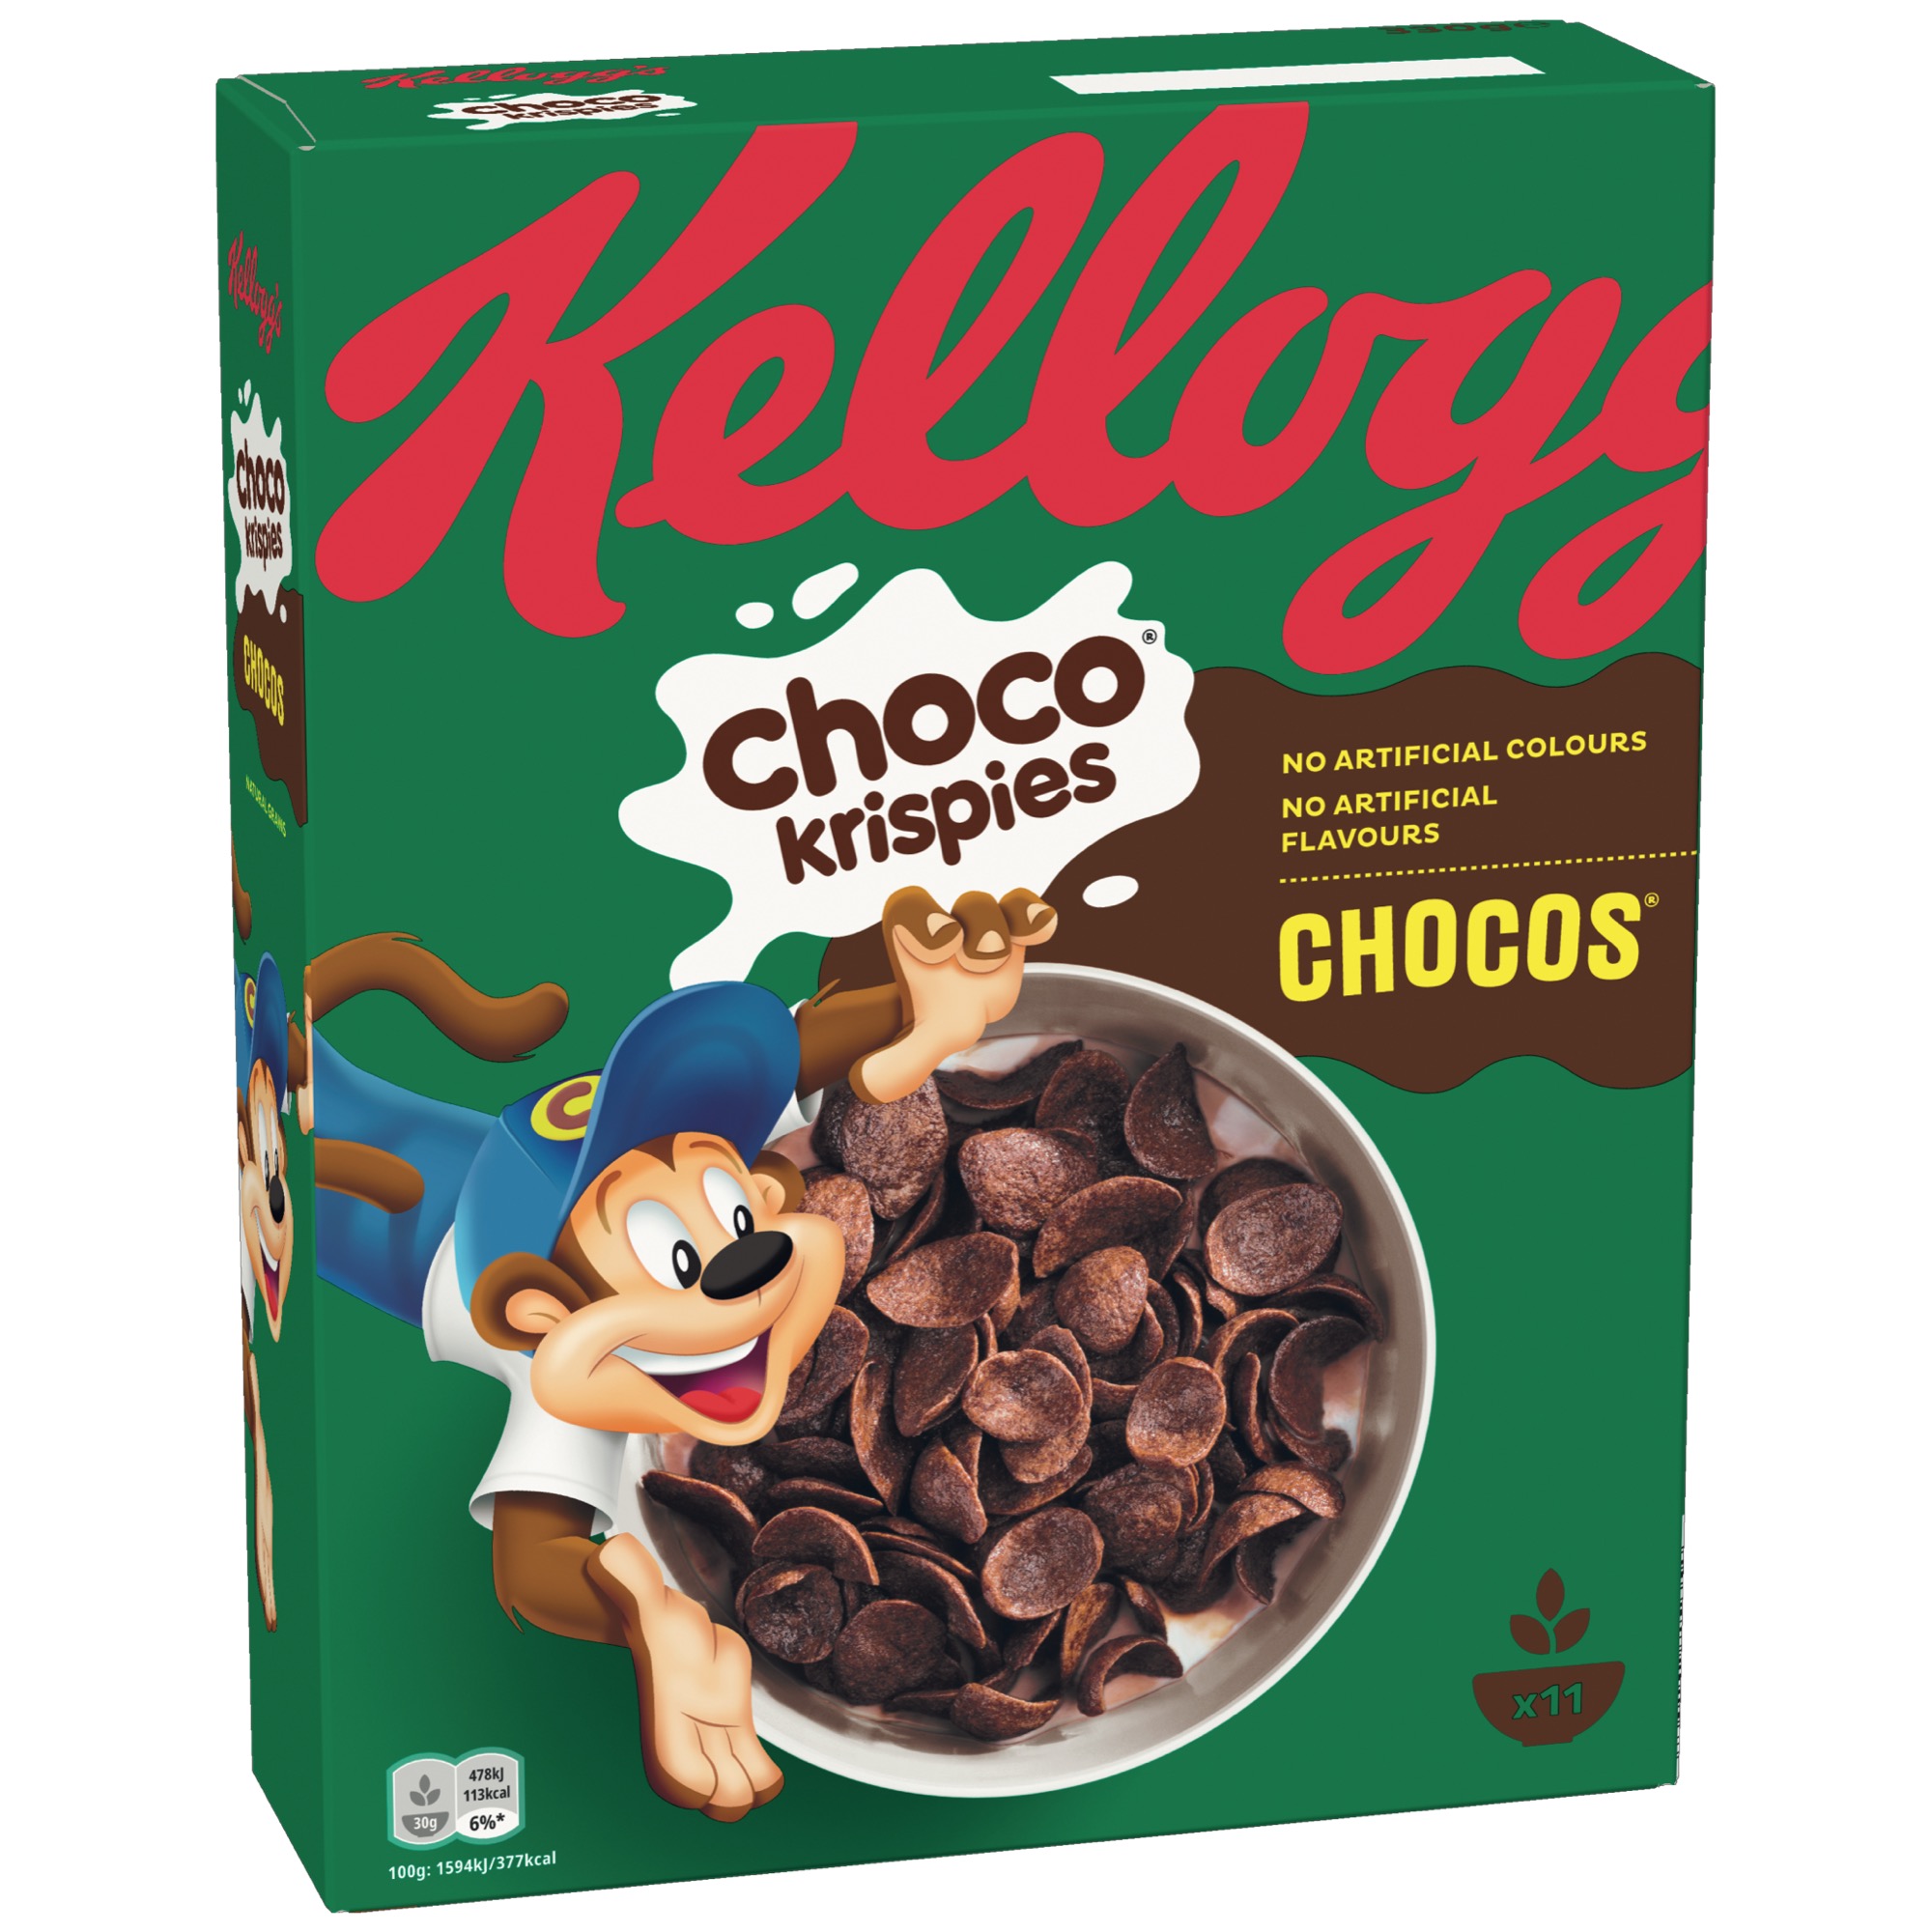 Kelloggs Choco Krispies Chocos 330g